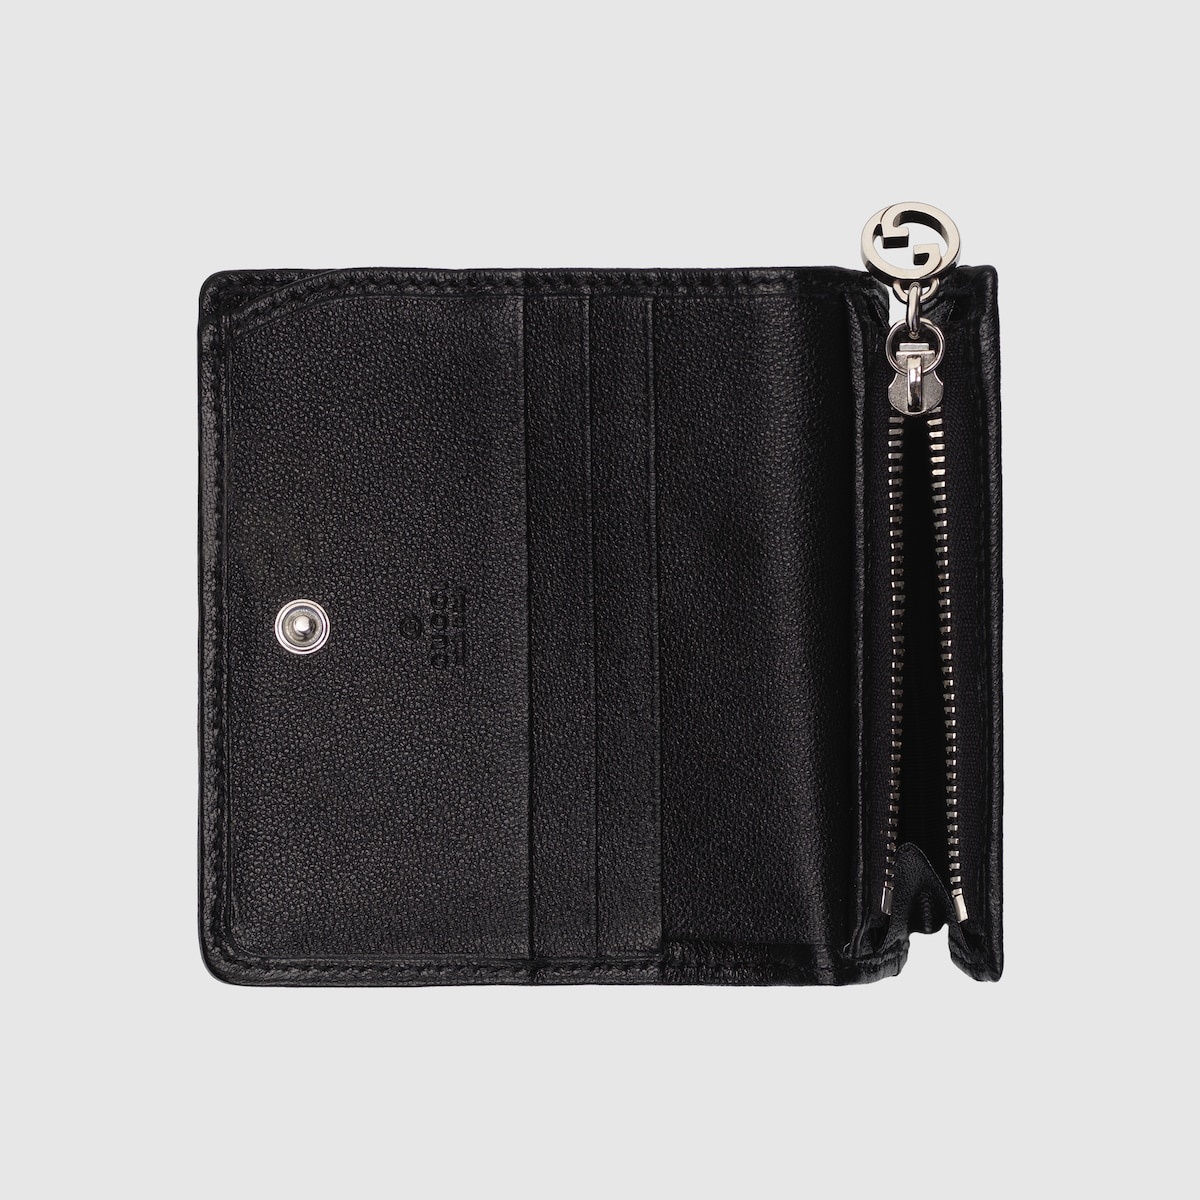 Gucci Blondie card case wallet - 6